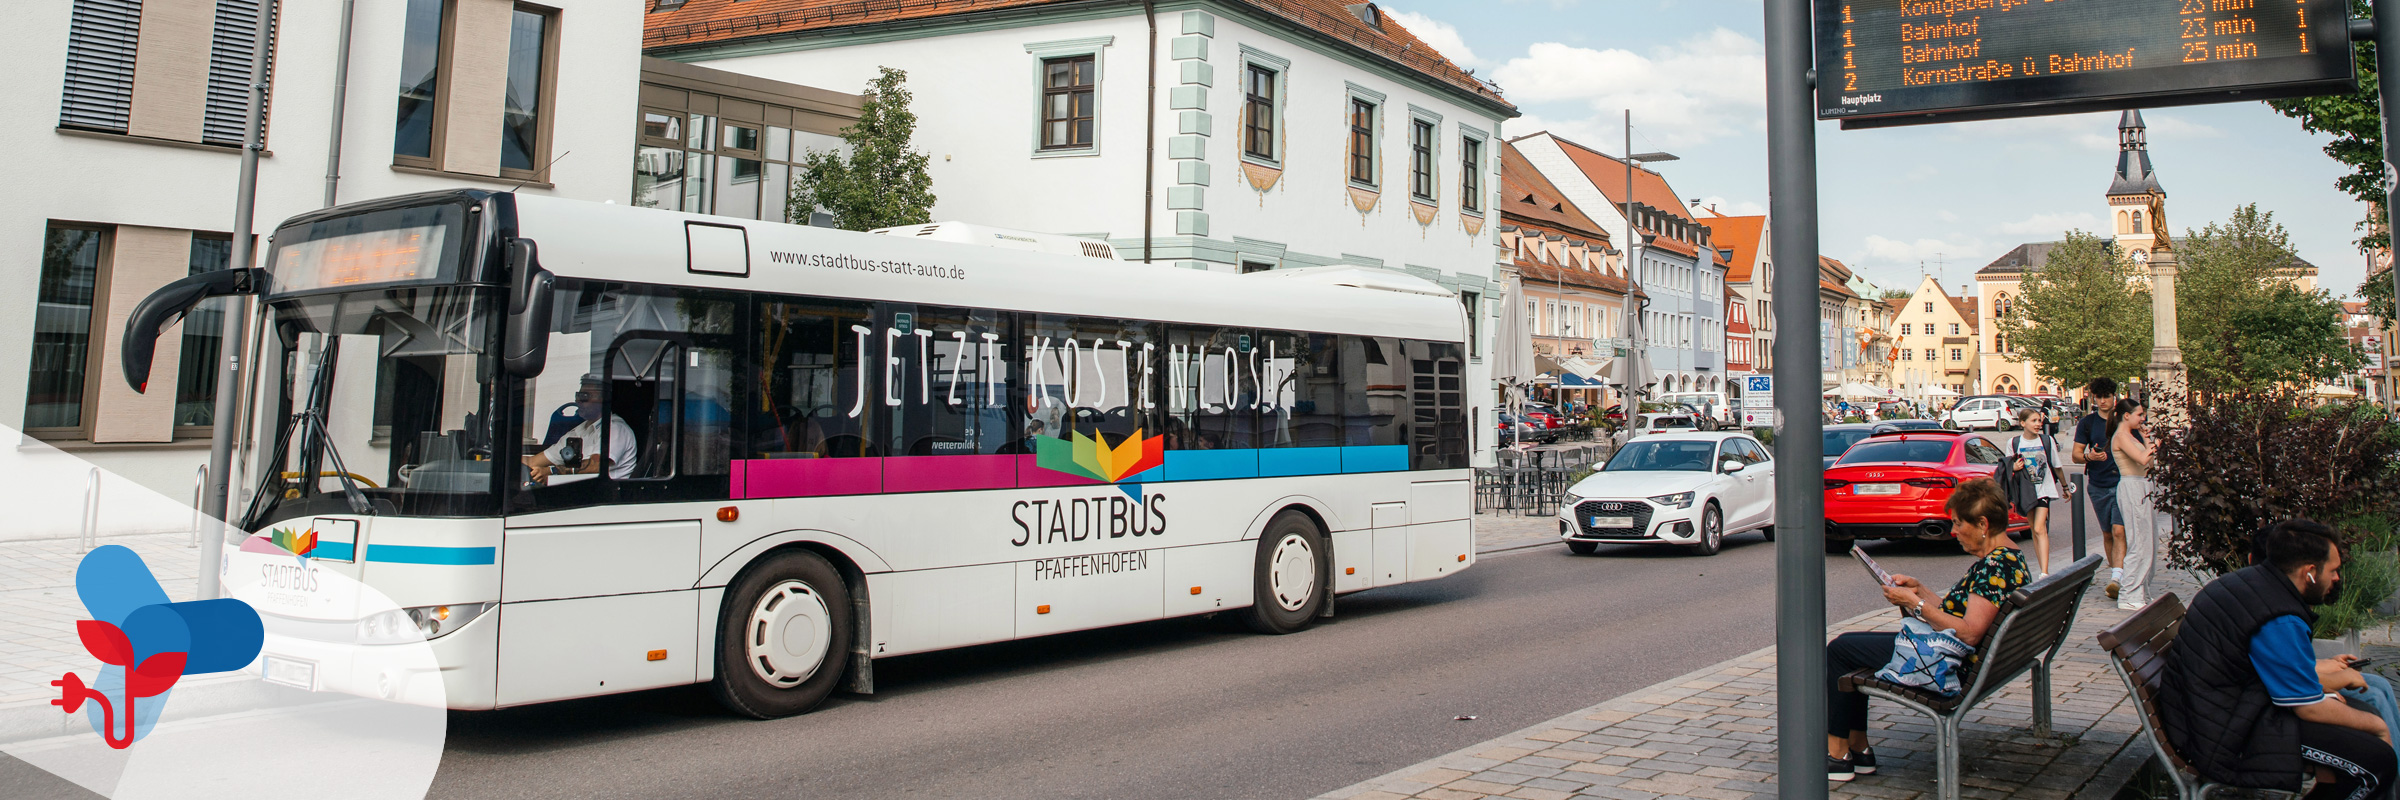 Stadtbus im bayrischen Pfaffenhofen